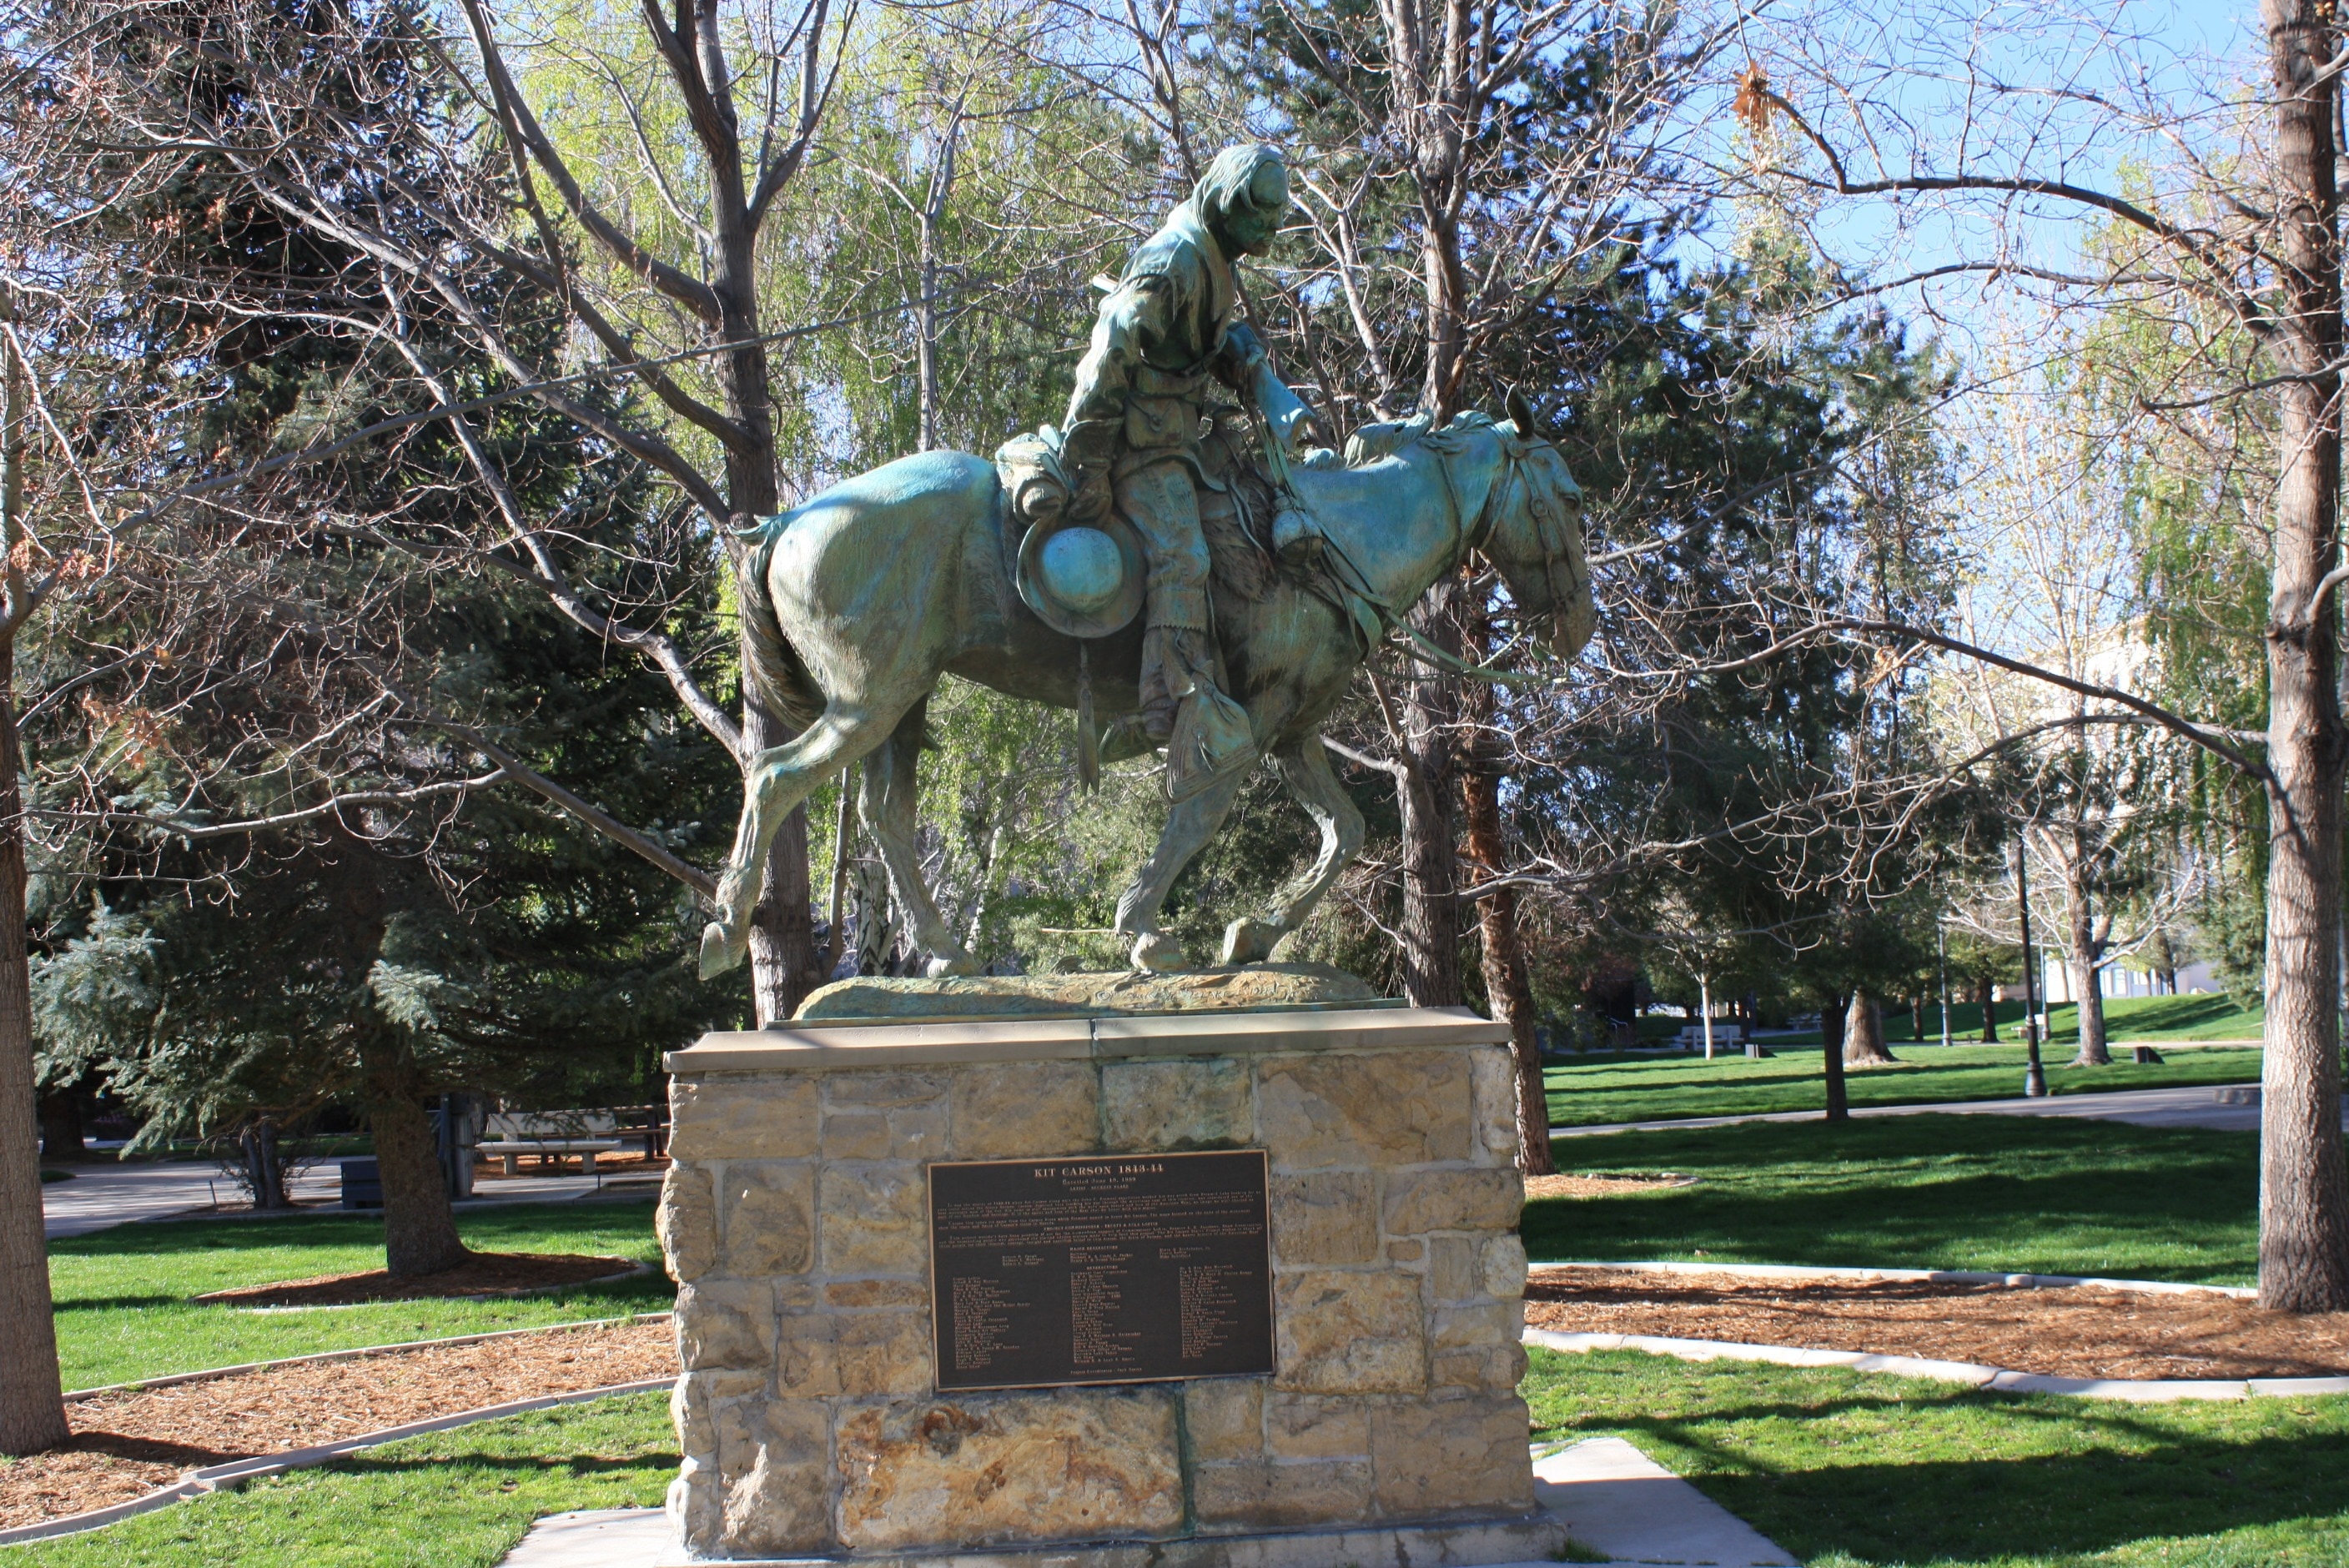 Person riding Horse concrete statuette